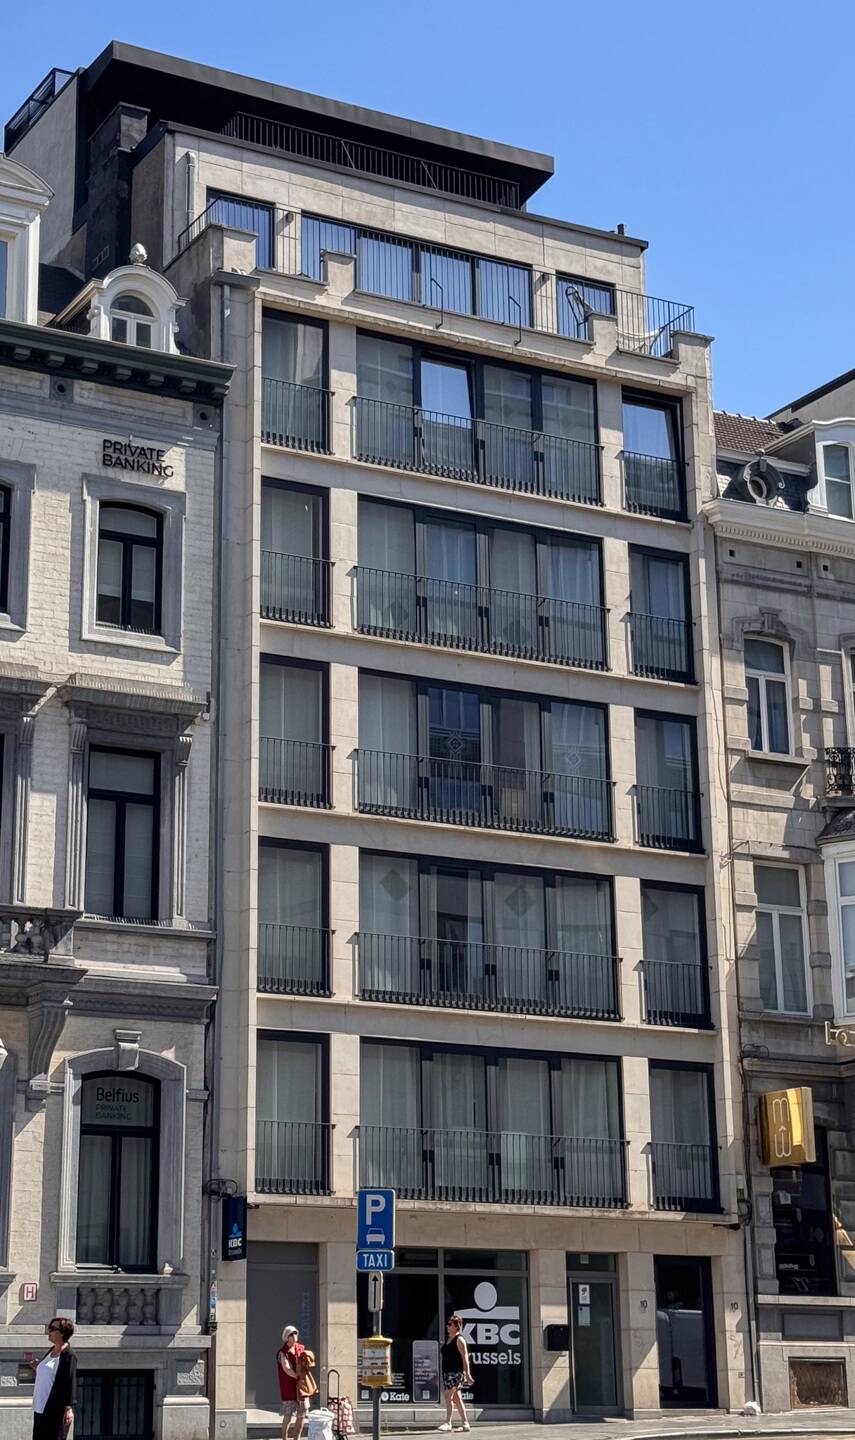 Immeuble mixte à  à Bruxelles 1000 6500000.00€ 5 chambres 966.00m² - annonce 168570